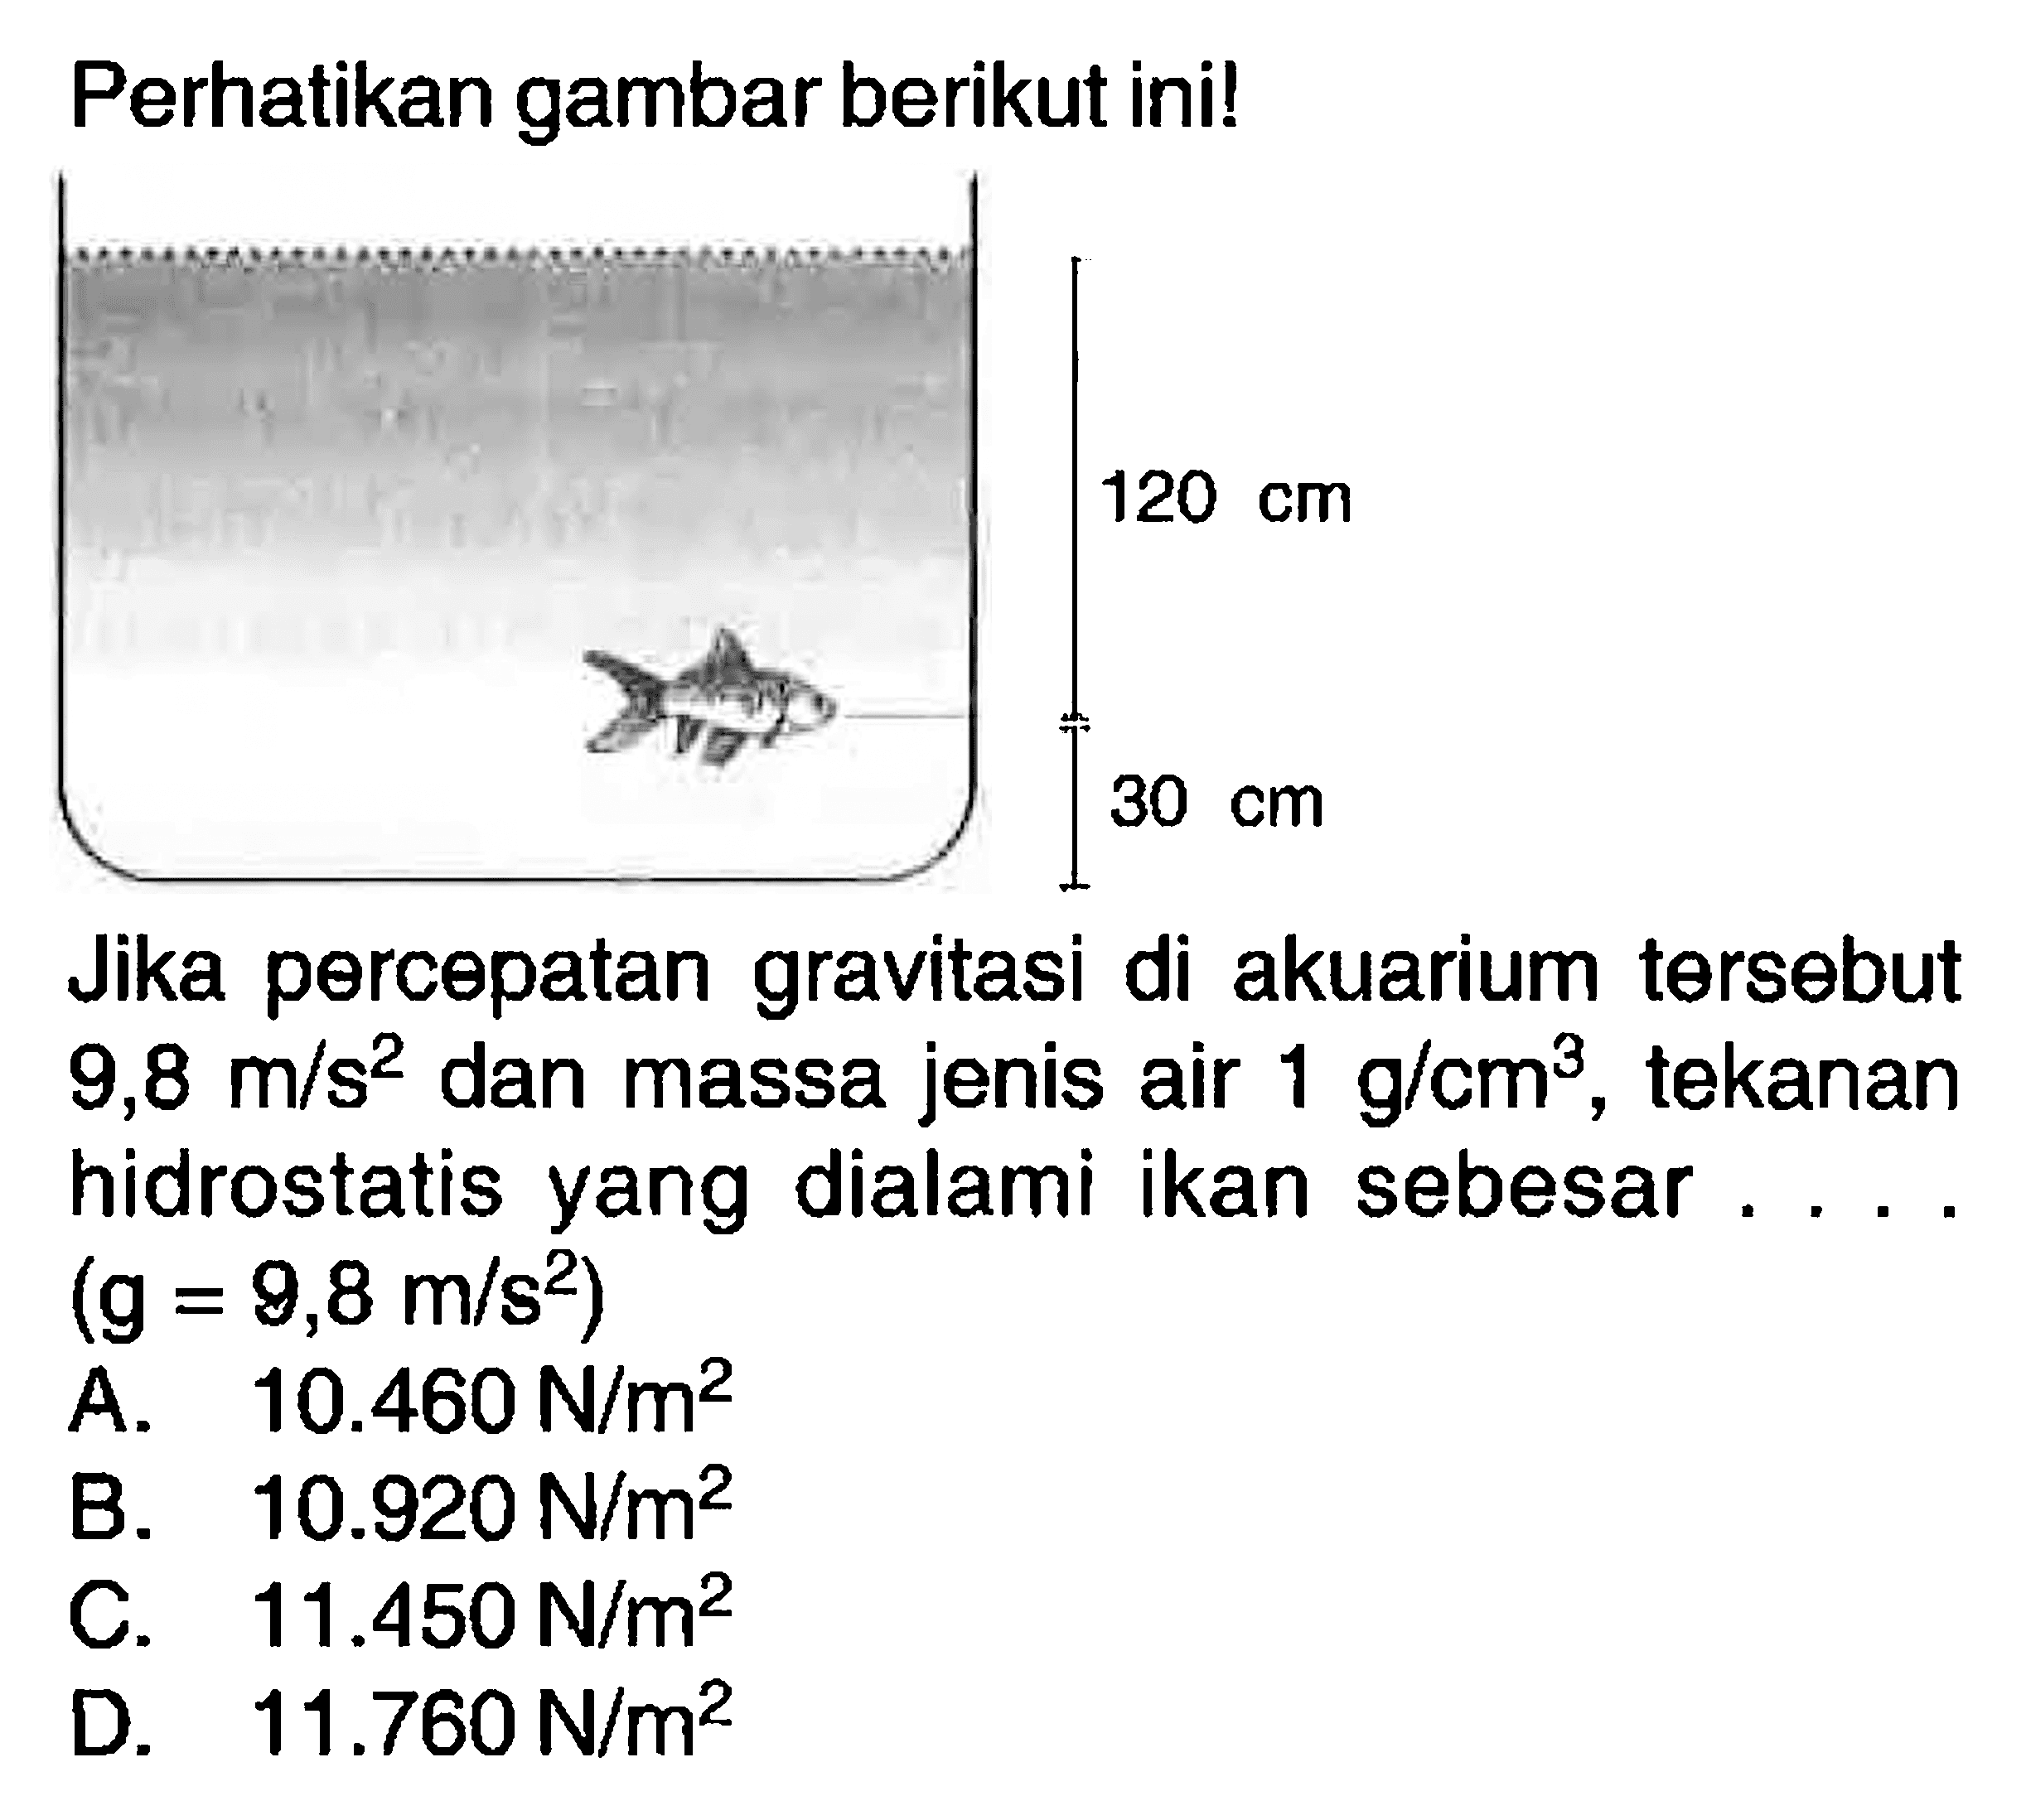 Perhatikan gambar berikut ini! Jika percepatan gravitasi di akuarium tersebut 9,8 m/s^2 dan massa jenis air 1 g/ cm^3, tekanan hidrostatis yang dialami ikan sebesar .... (g=9,8 m/s^2) 
